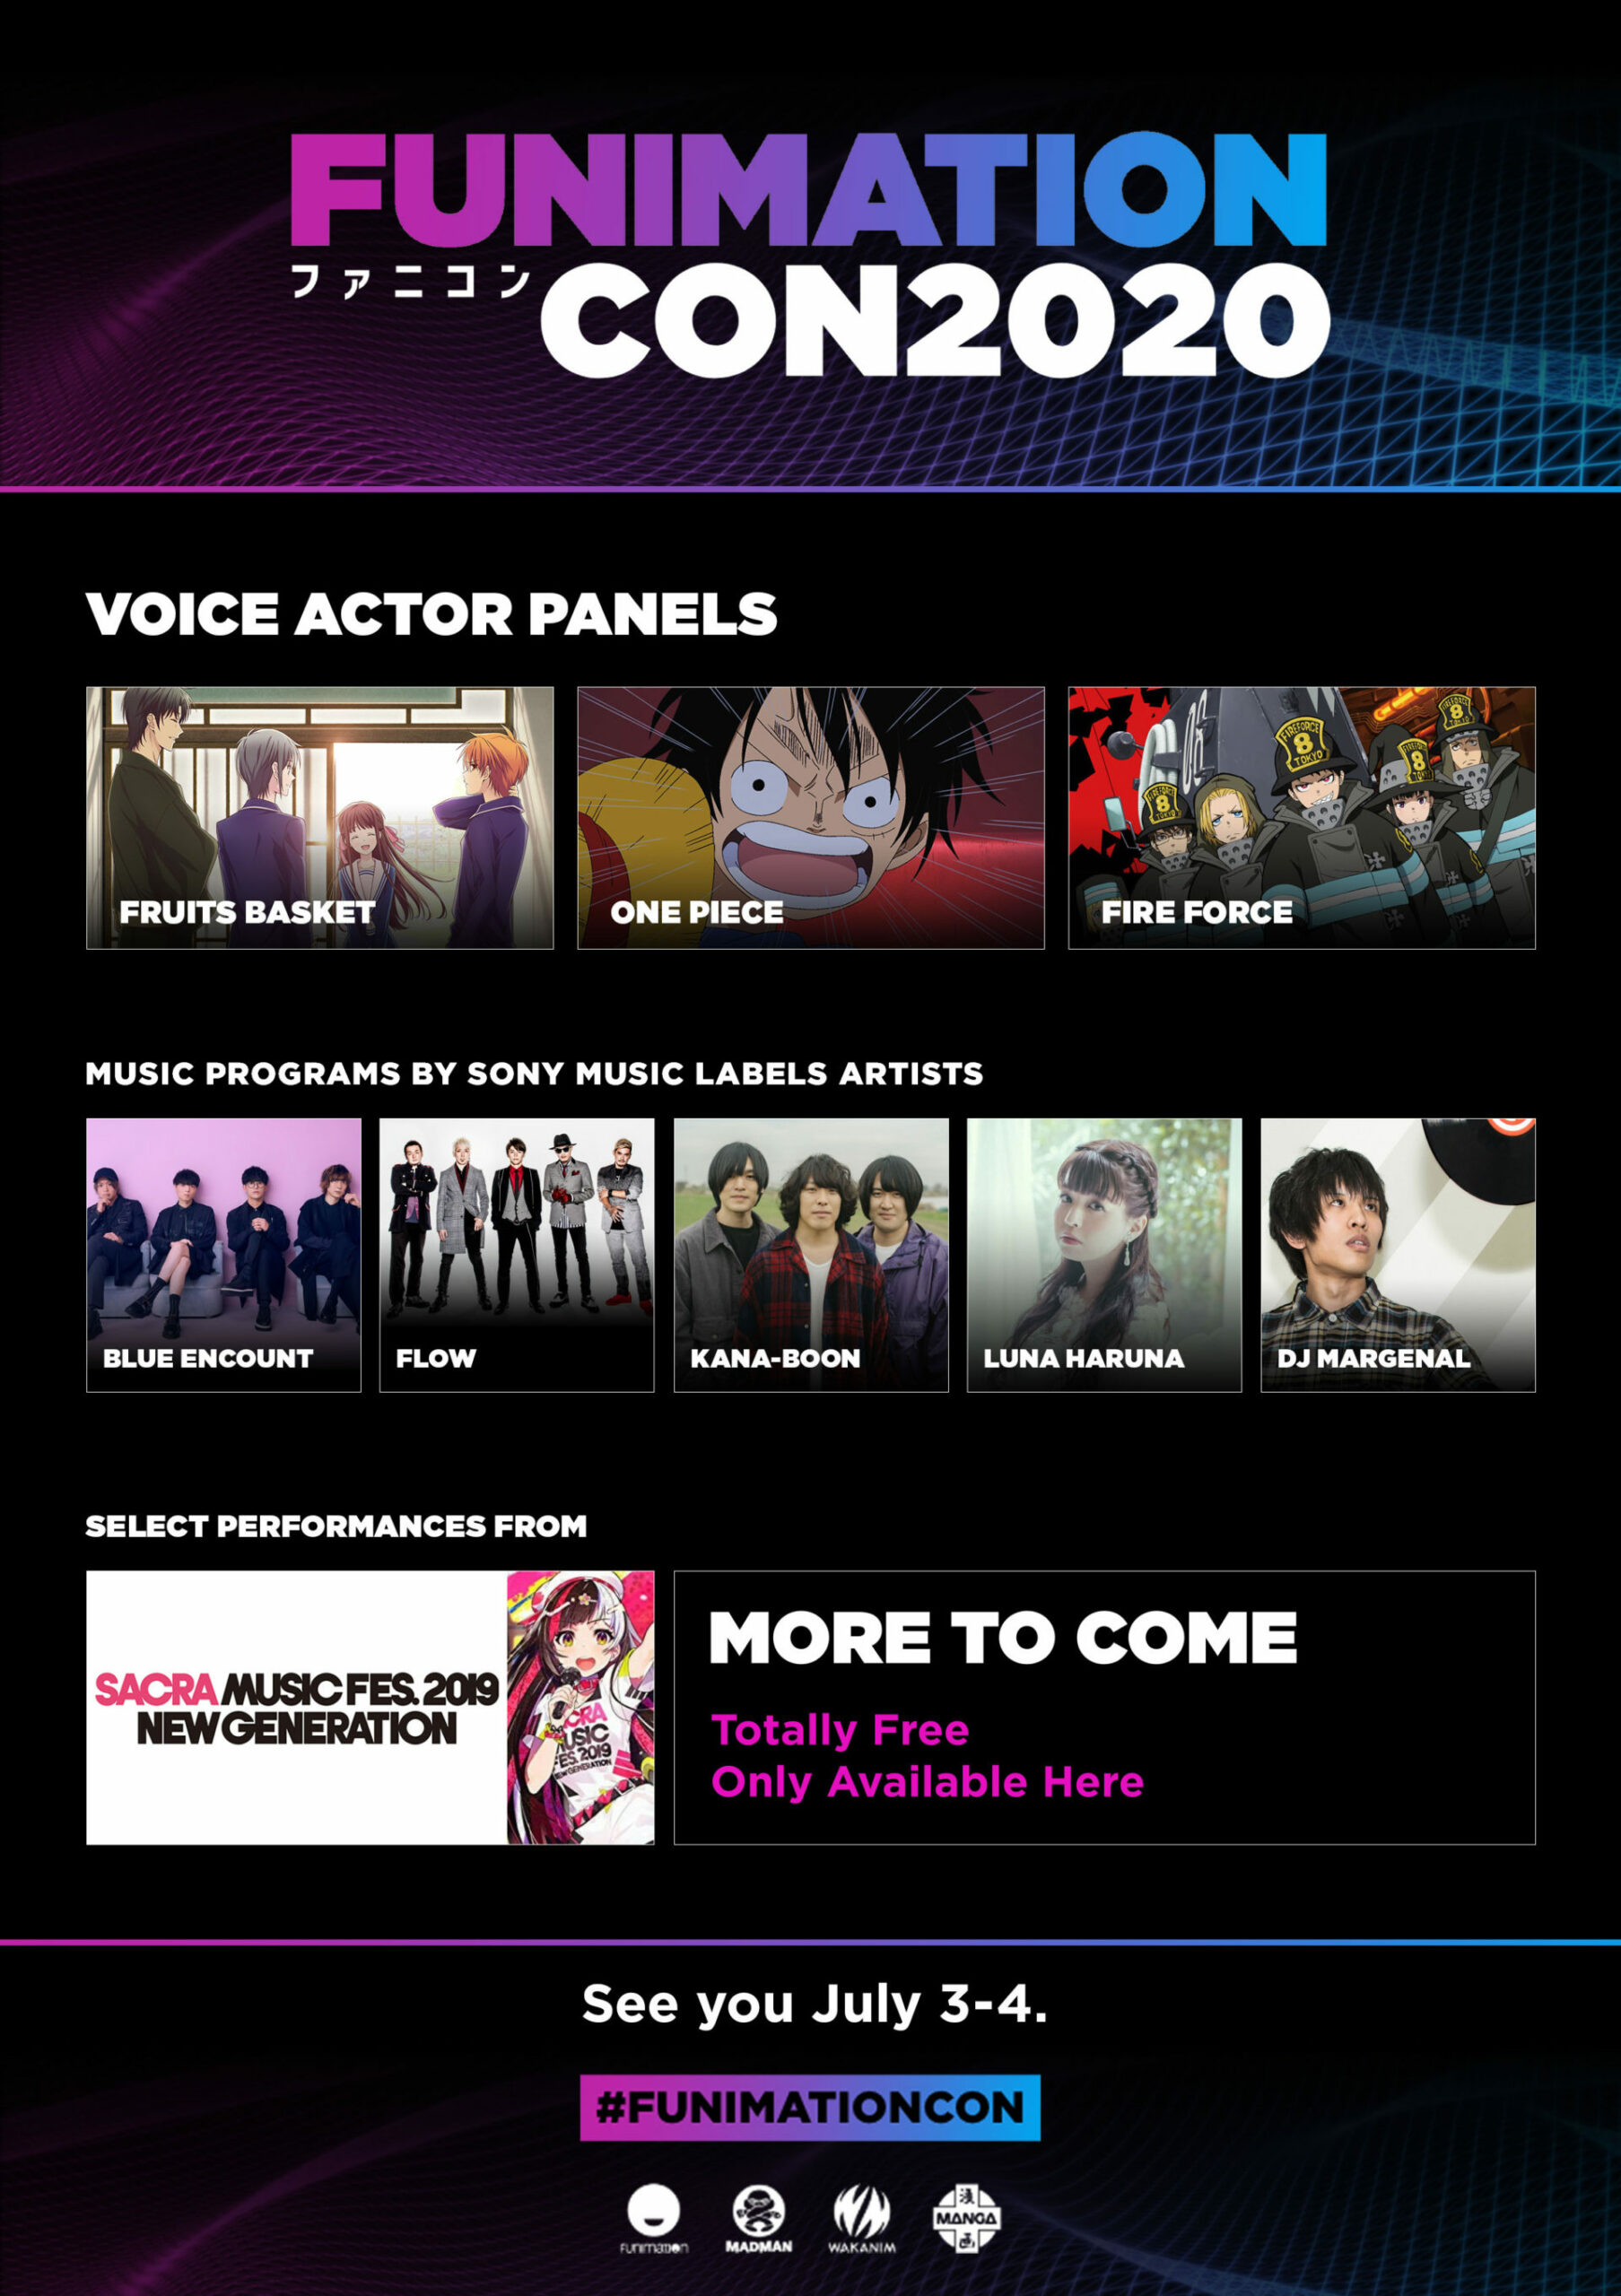 Shonen Jump Hosts Panel in der FunimationCon 2020